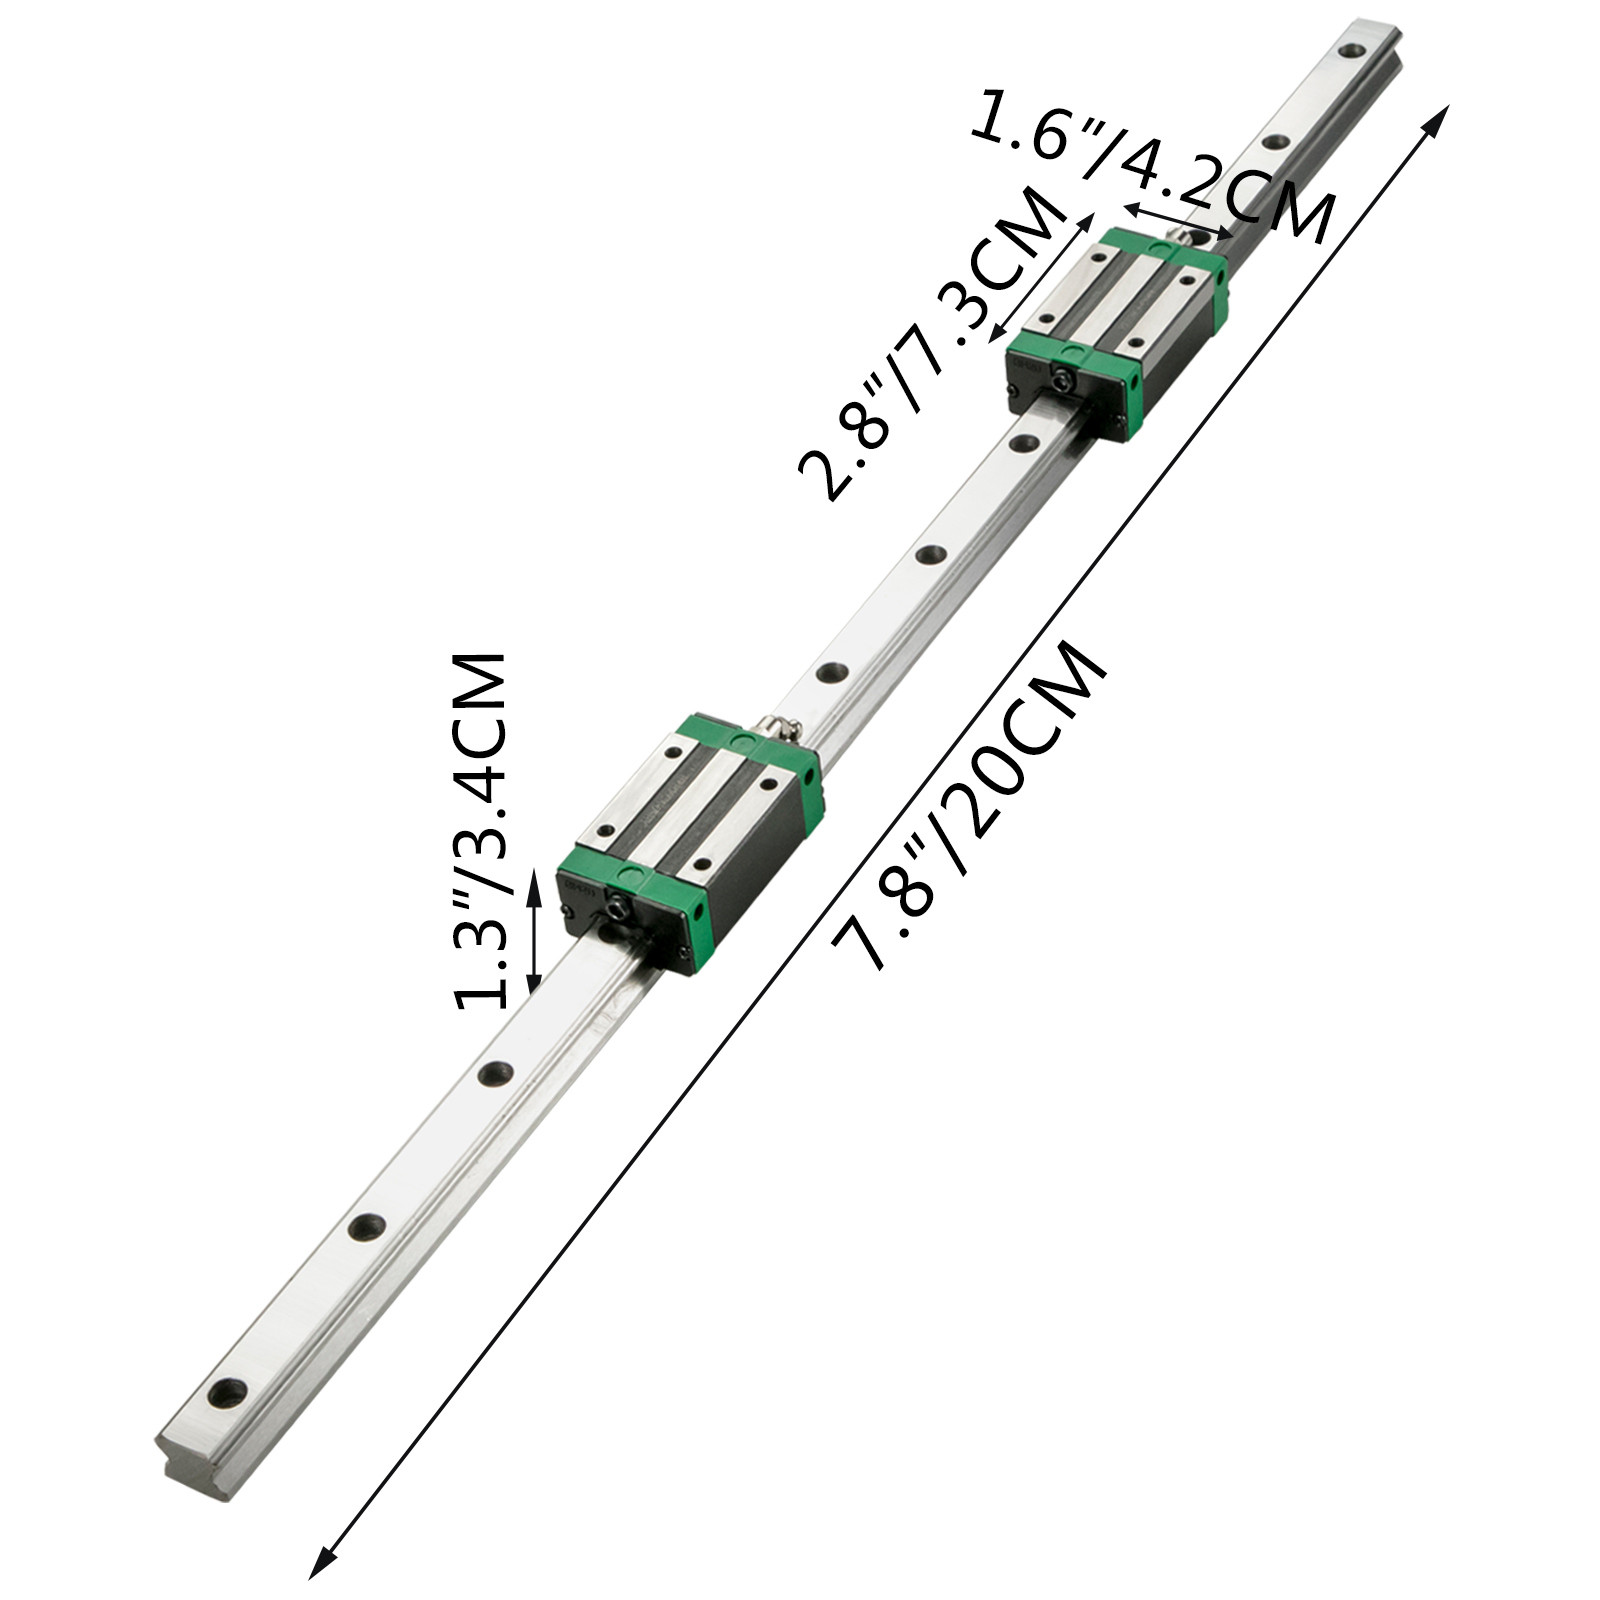 2stk HGR20 200-2000mm Linearführung Guide Rail+RM1605 Kugelumlaufspindel Set 